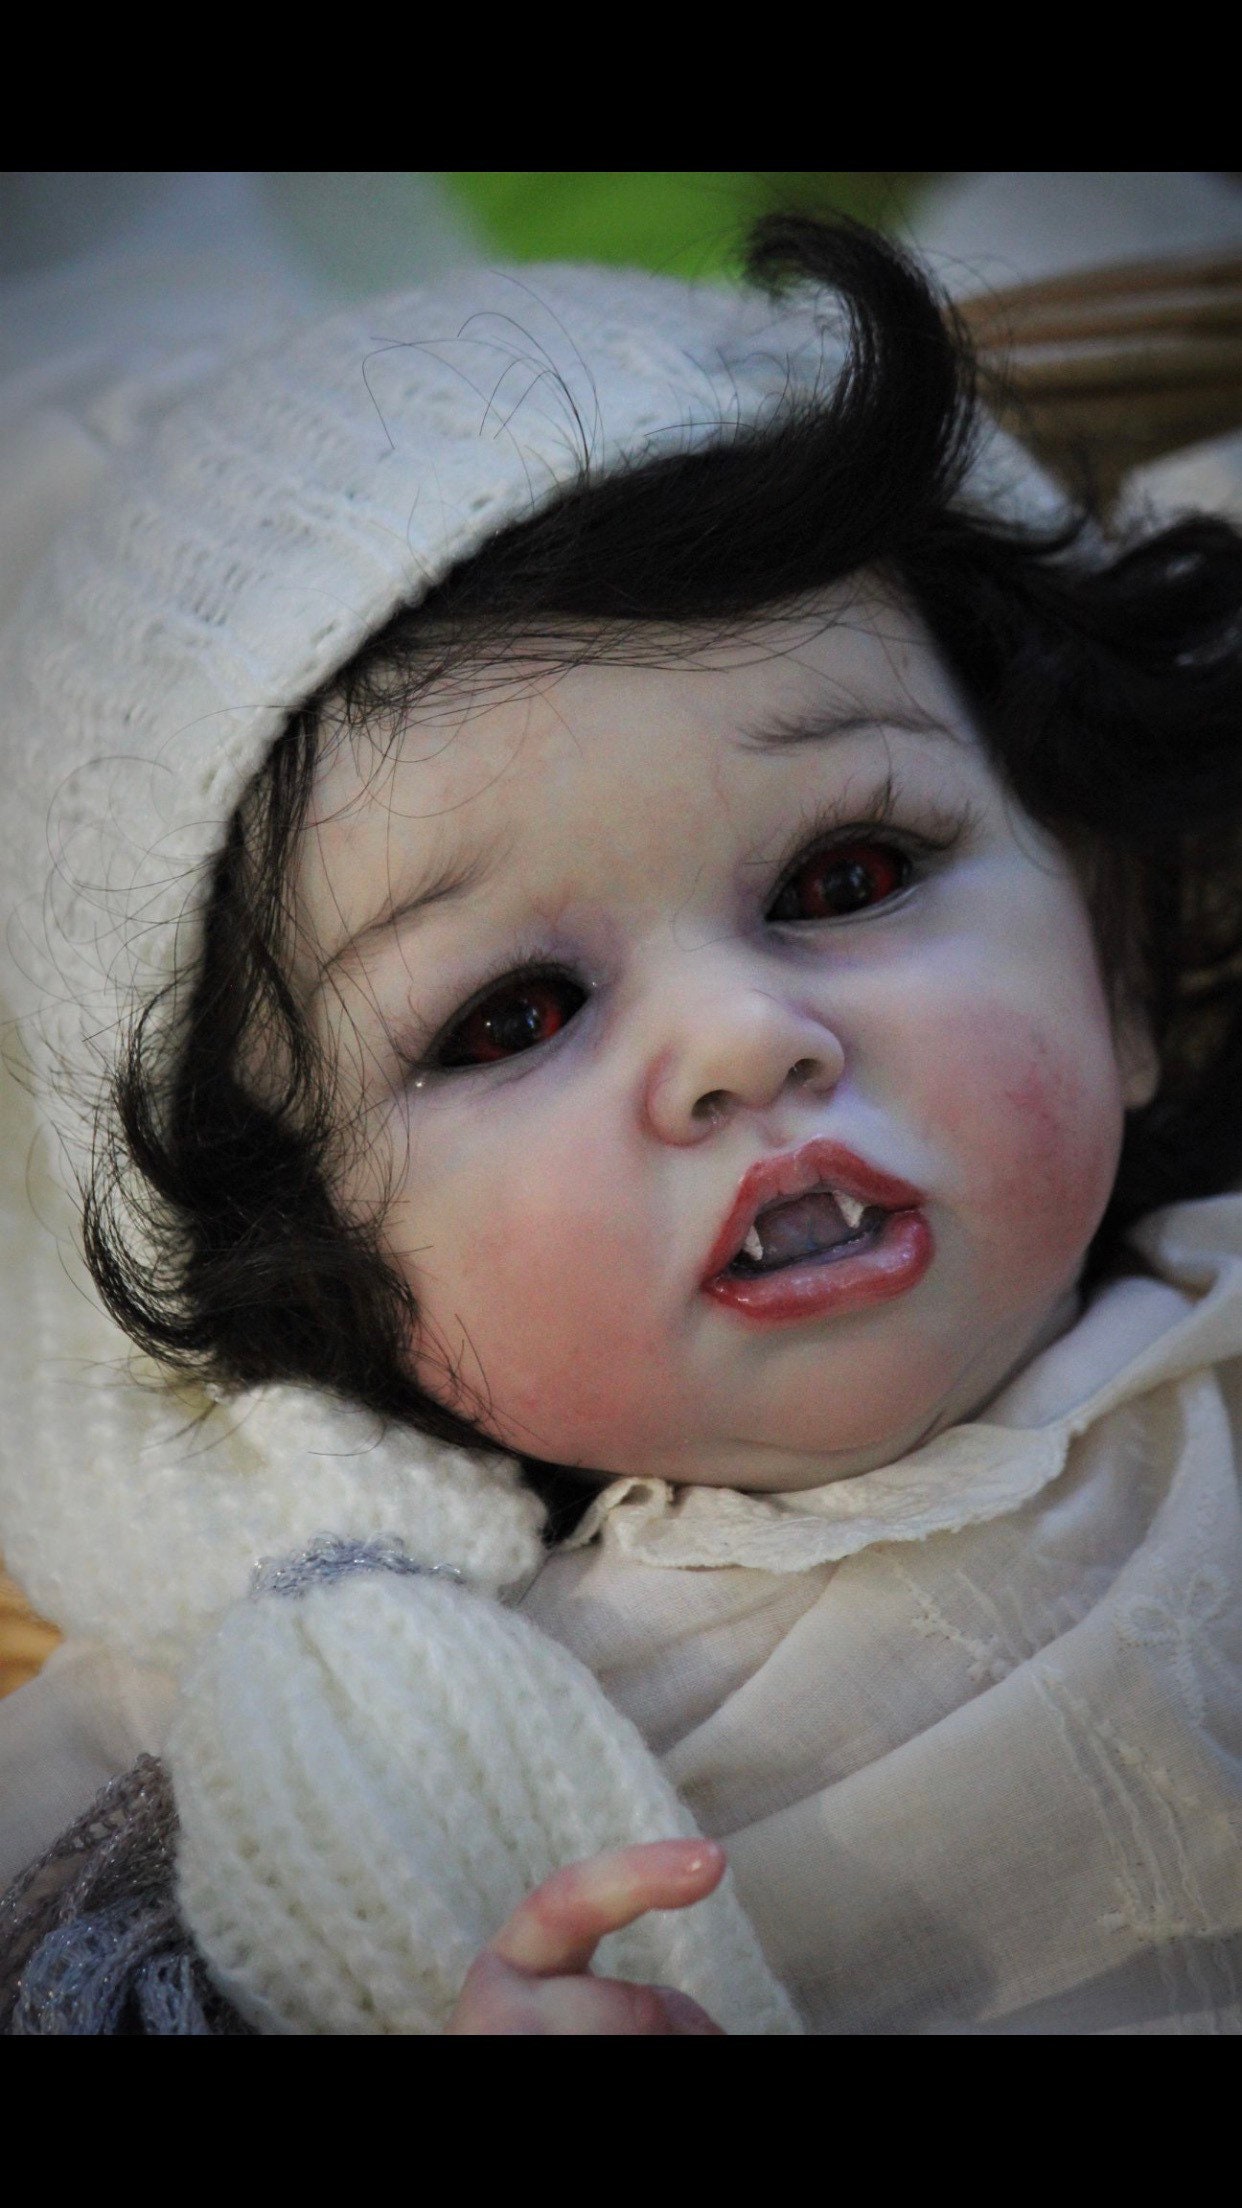 vampire baby doll | tspea.org